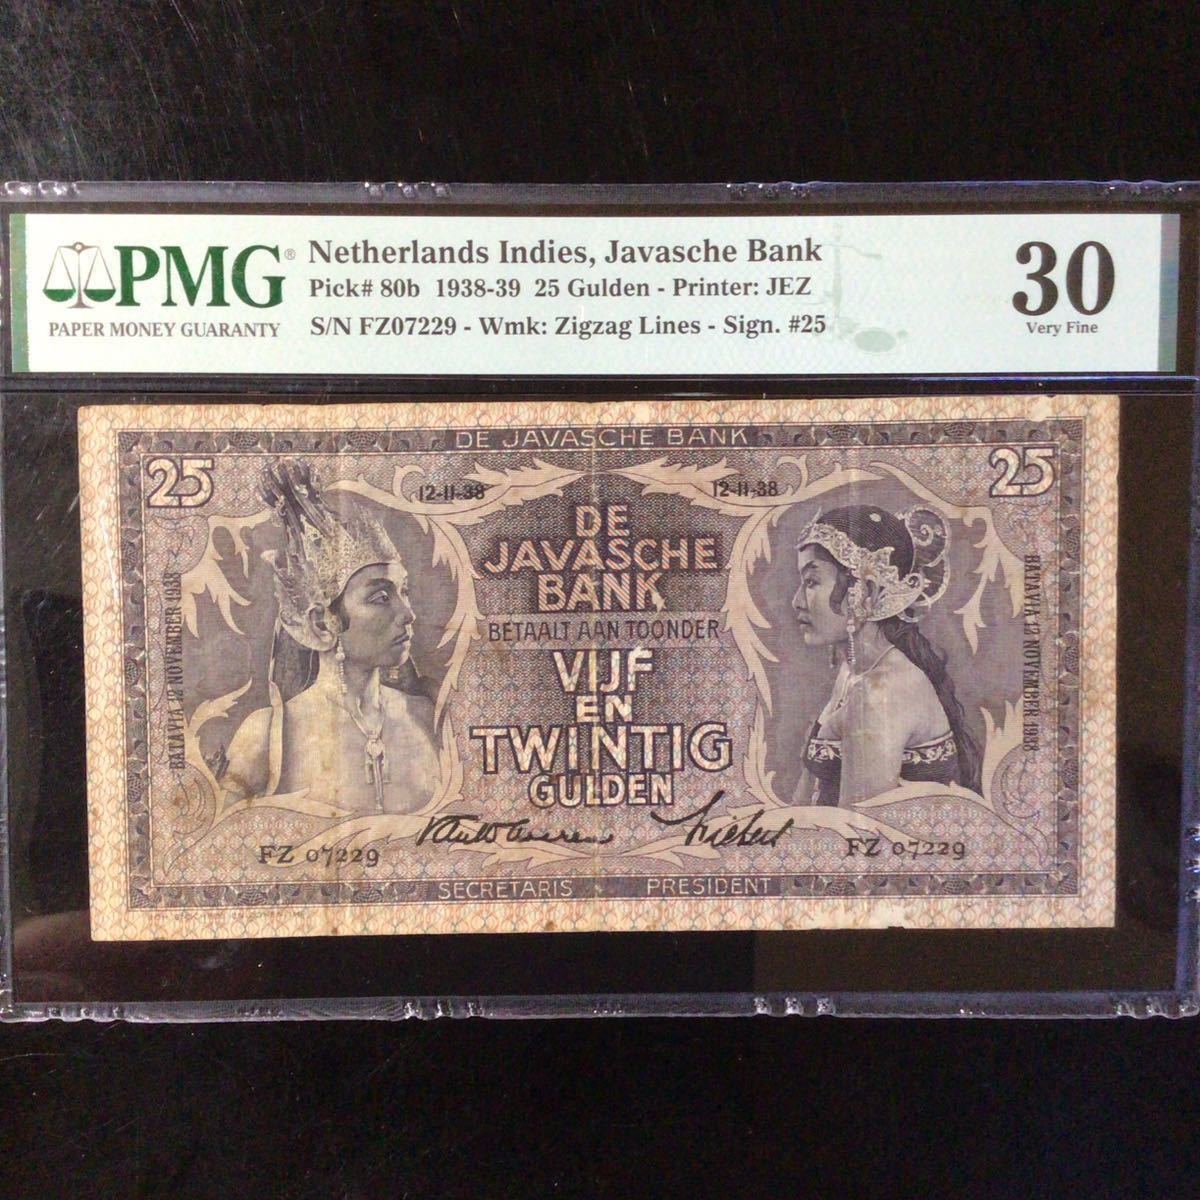 World Banknote Grading NETHERLANDS INDIES《Javasche Bank》25 Gulden【1938】『PMG Grading Very Fine 30』